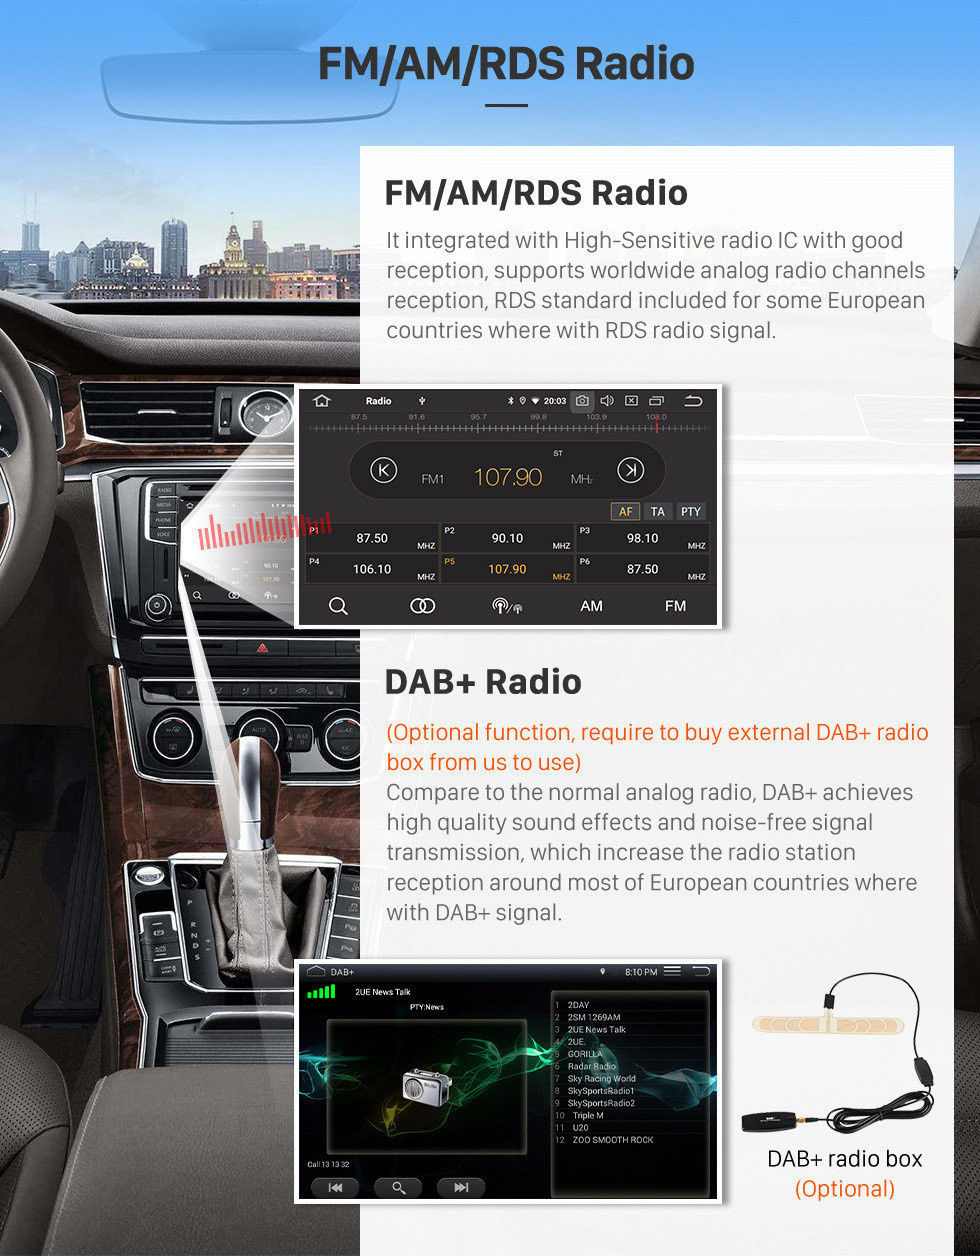 Seicane 10,1 Zoll HD Touchscreen GPS Radio Navigationssystem Android 12.0 Für 2014 2015 2016 Nissan Qashqai Unterstützung Bluetooth Musik ODB2 DVR Spiegelverbindung TPMS Lenkradsteuerung